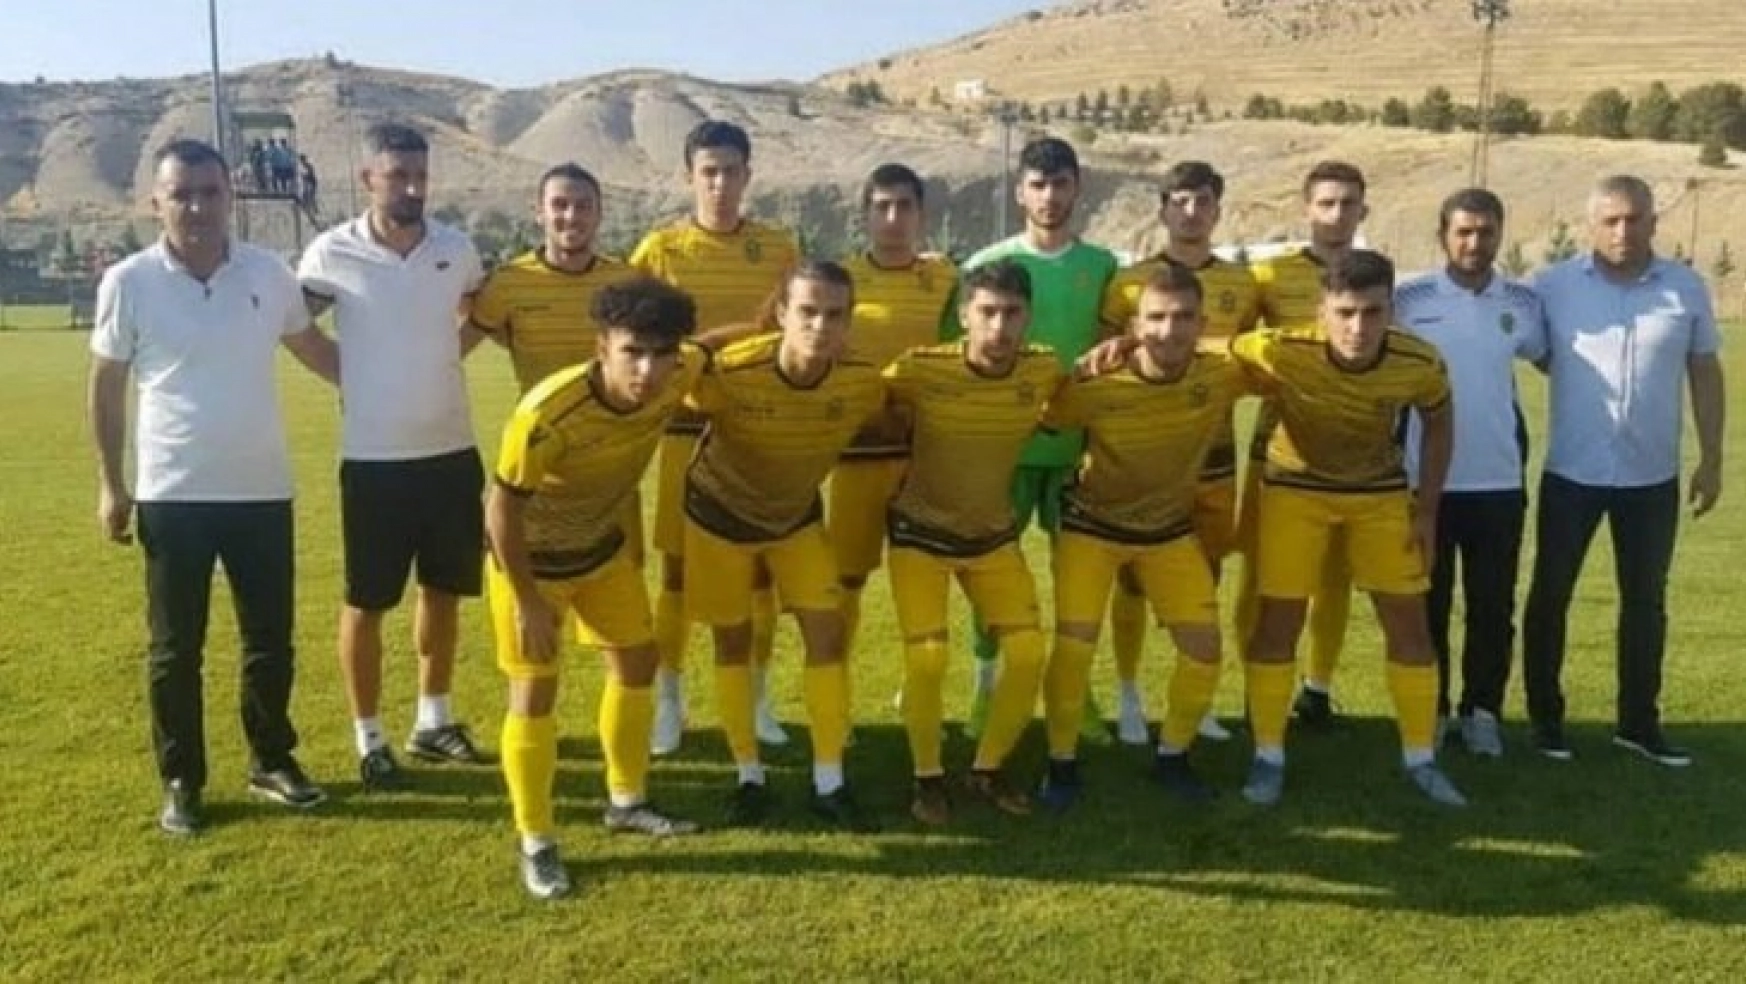 Elit U19'da Yeni Malatyaspor 3-2 mağlup oldu